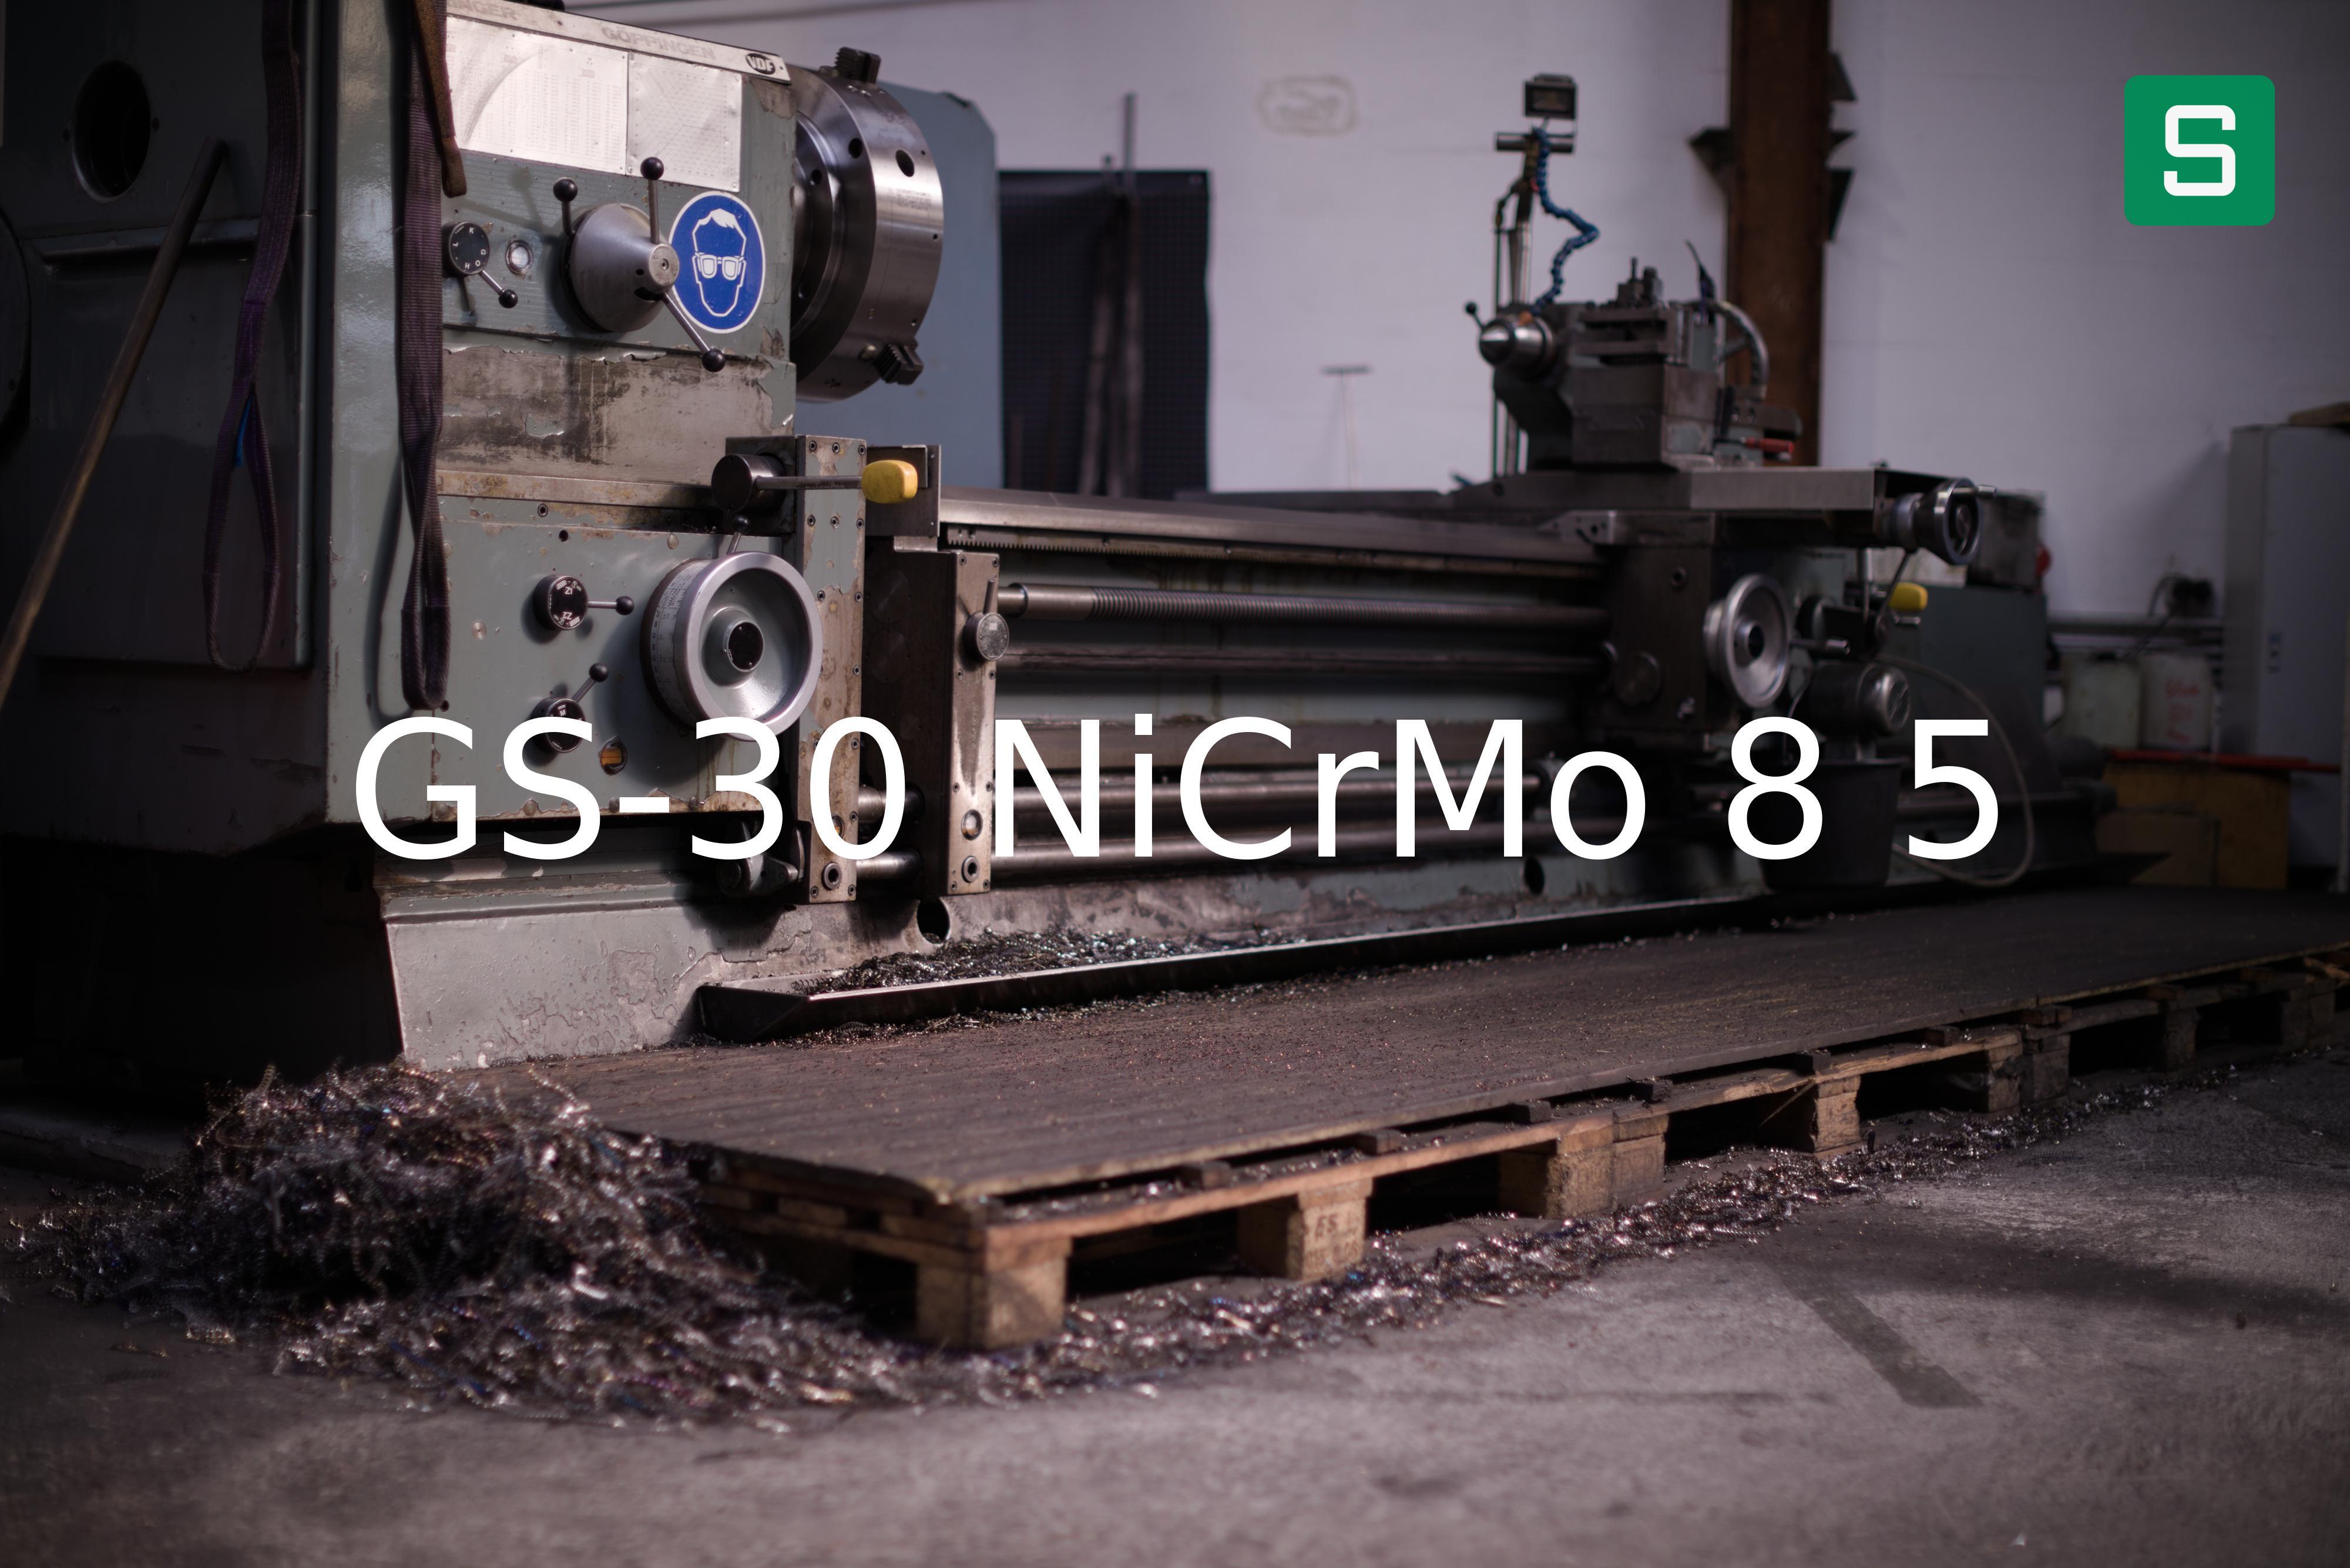 Stahlwerkstoff: GS-30 NiCrMo 8 5